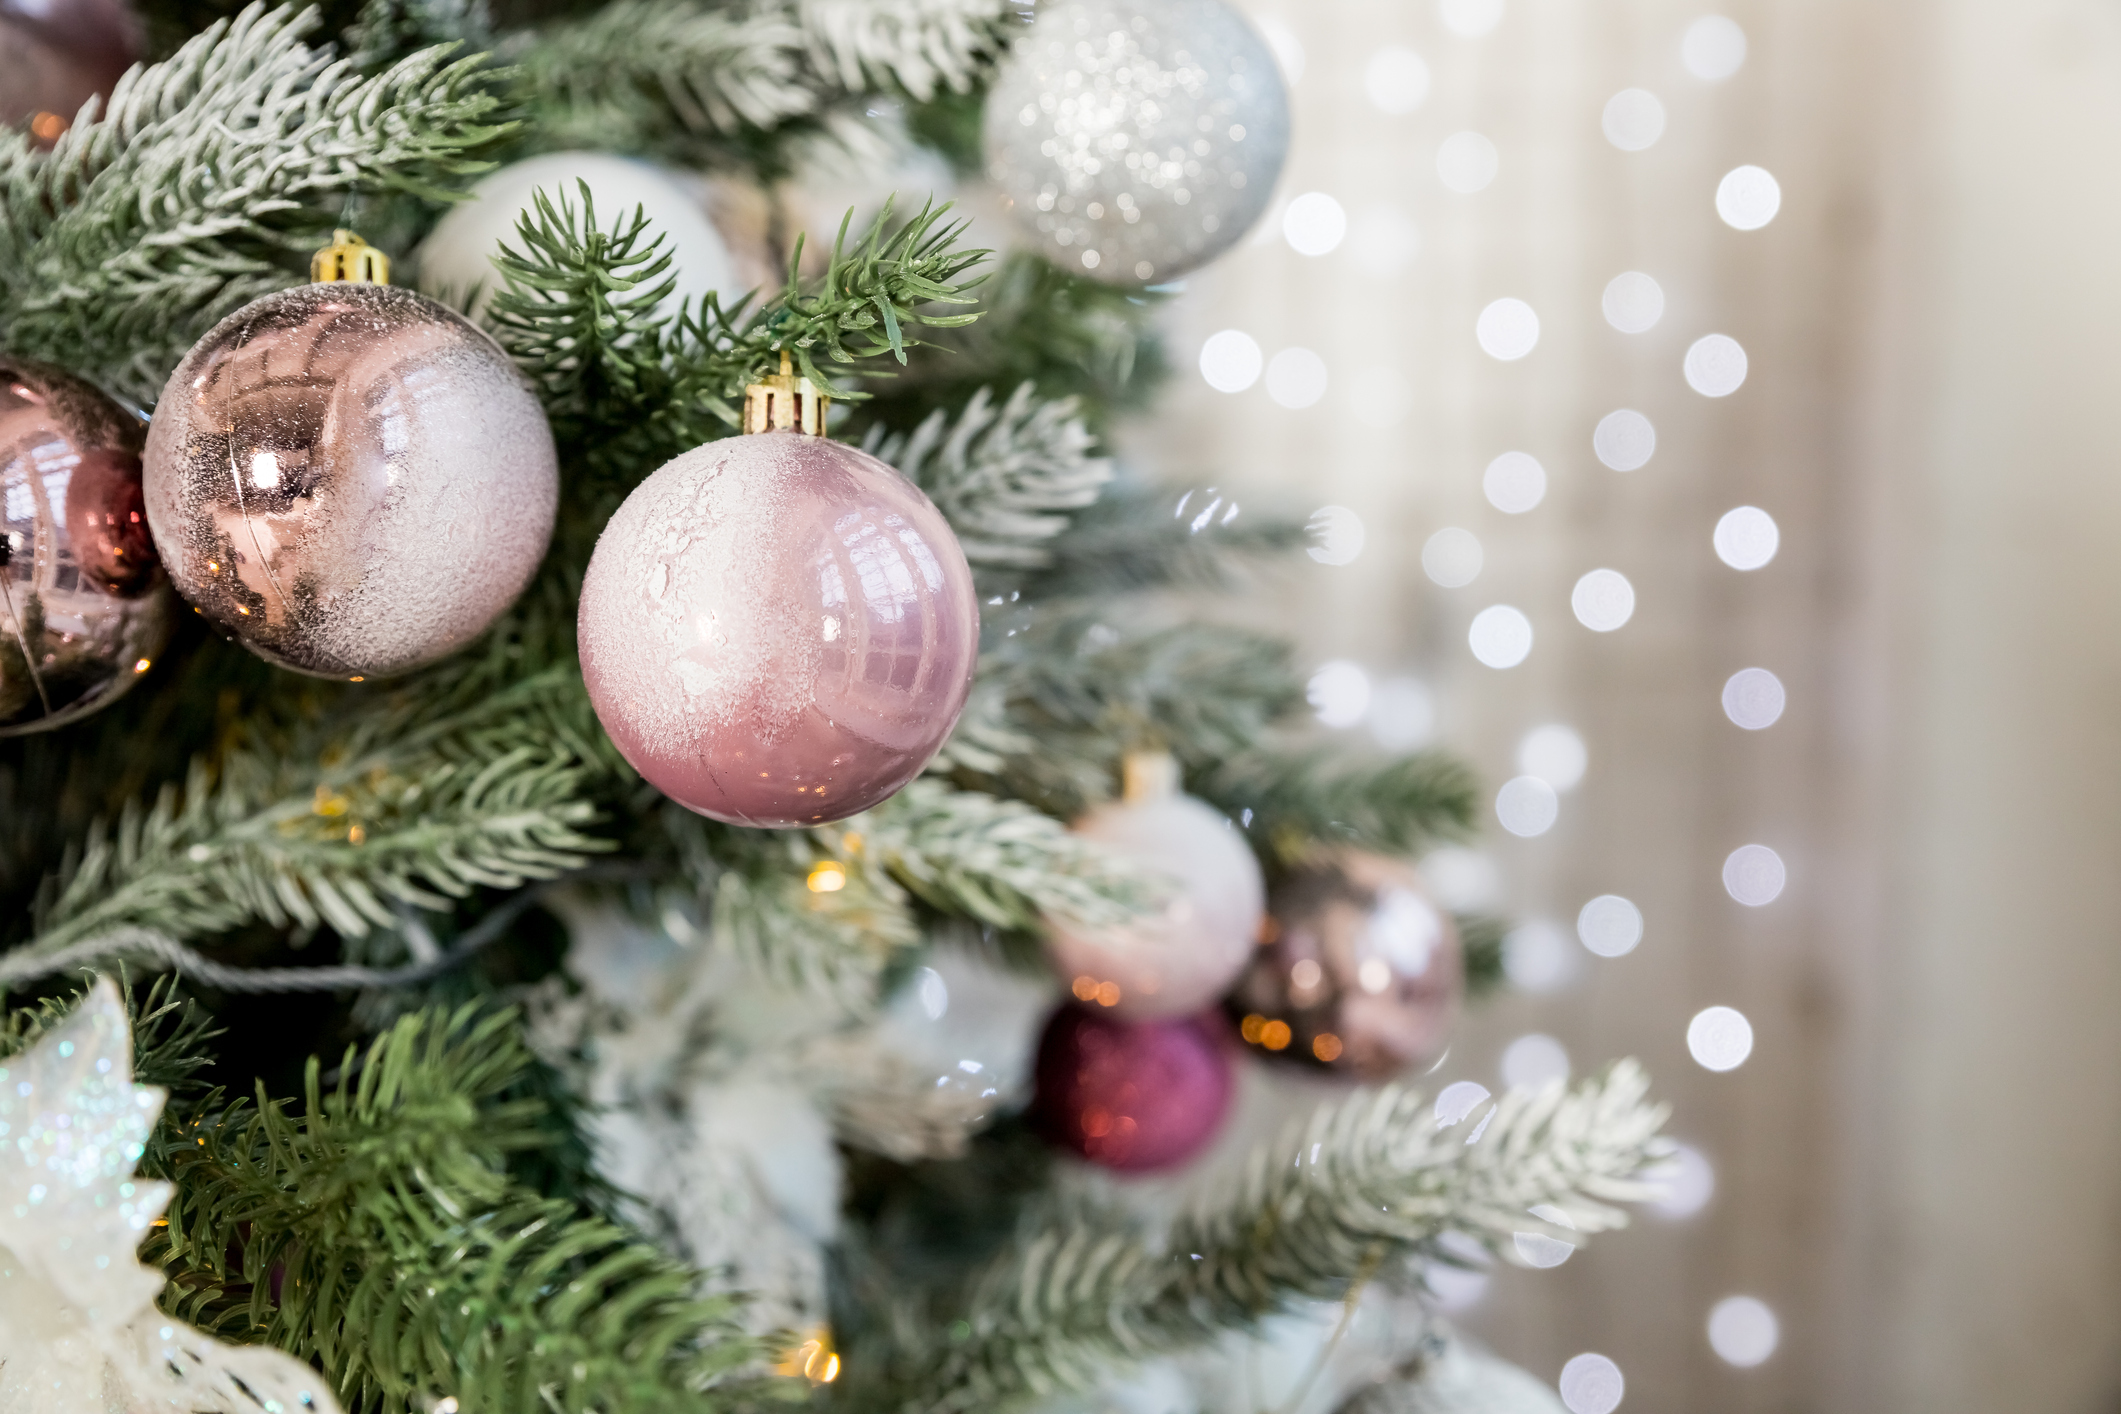 Είσαι fan του ροζ; Τότε αυτά τα Χριστουγεννιάτικα δέντρα φωνάζουν το όνομά σου